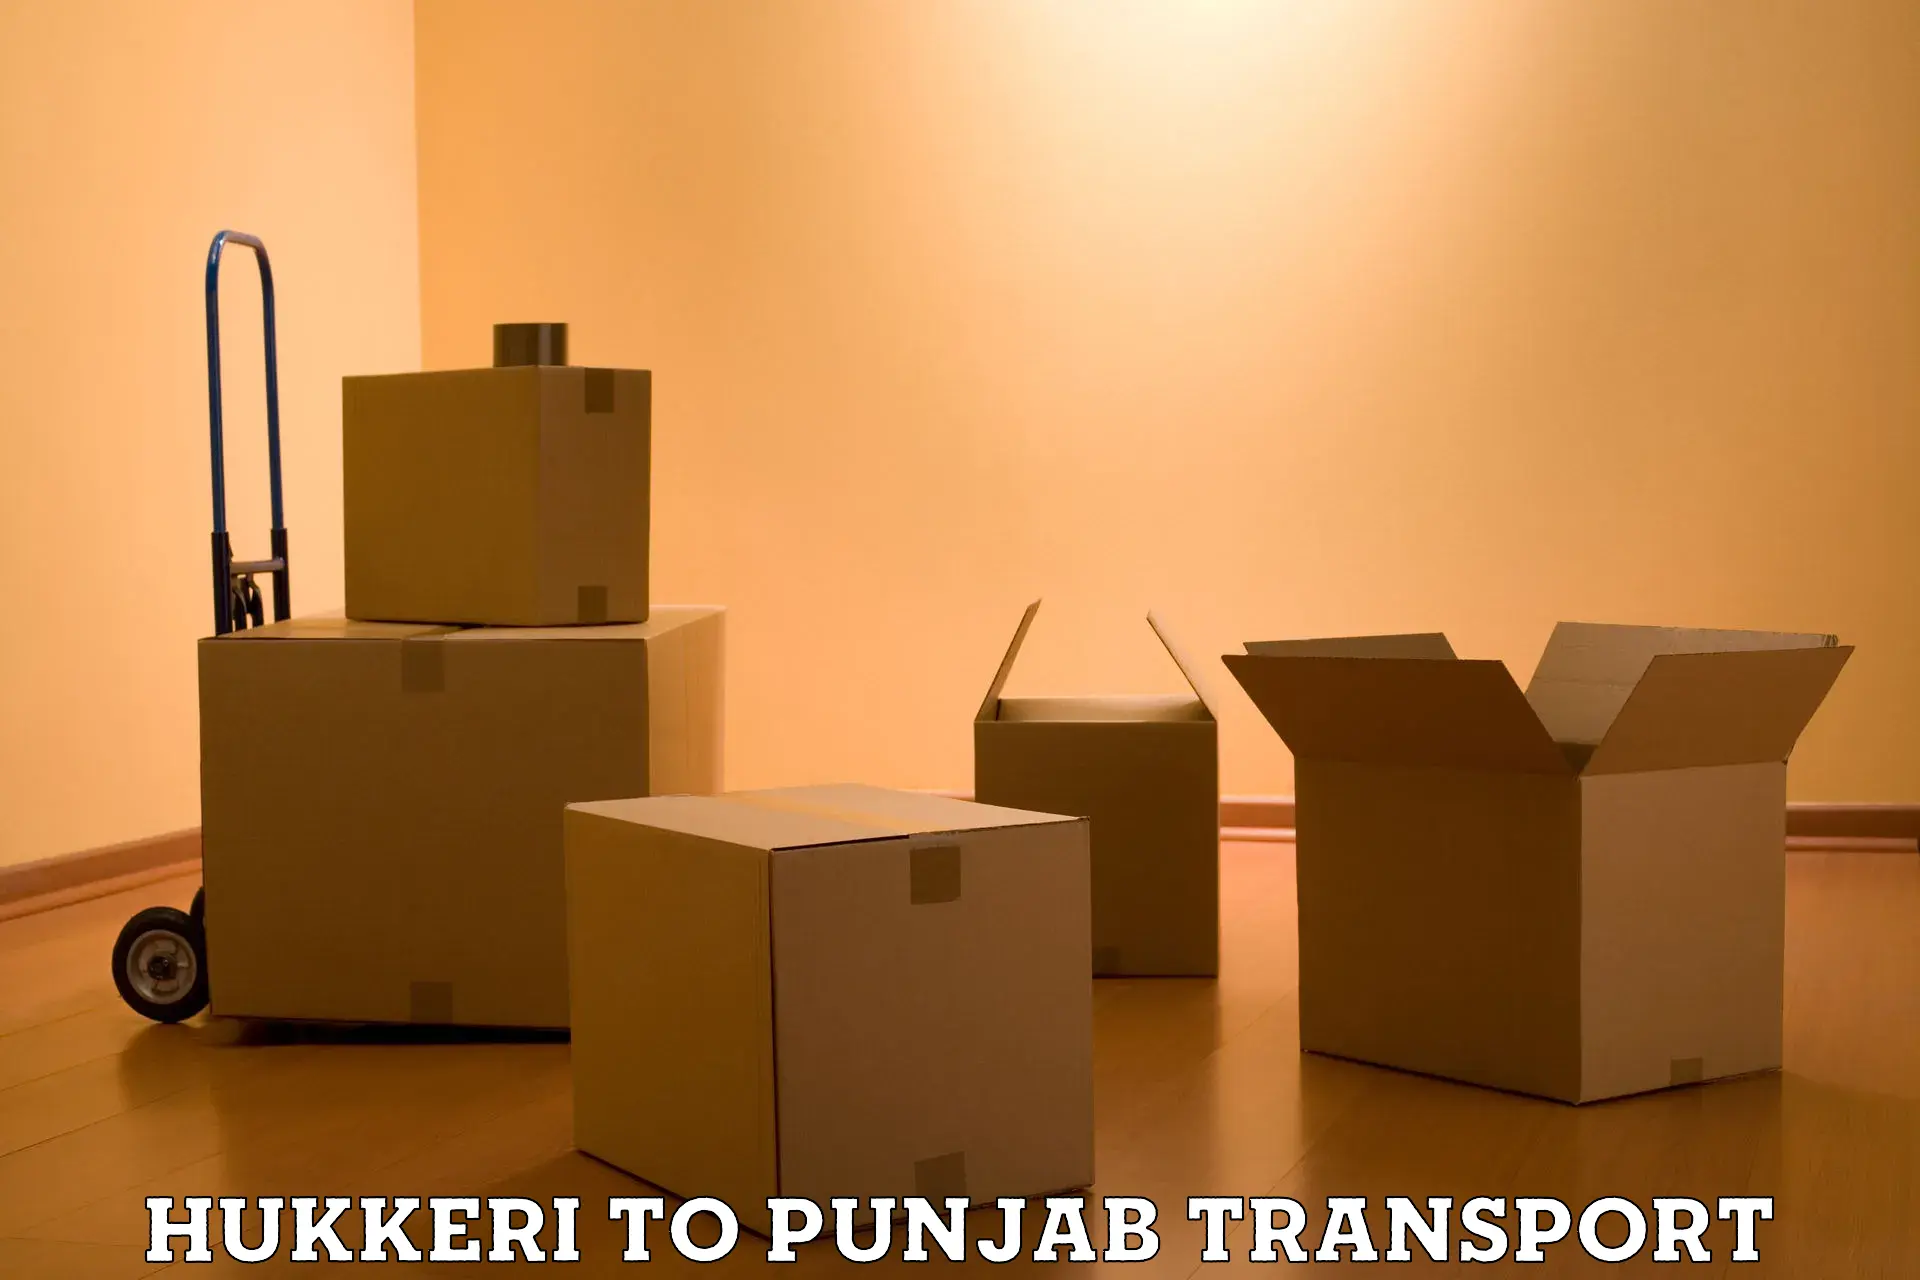 Two wheeler parcel service Hukkeri to Punjab